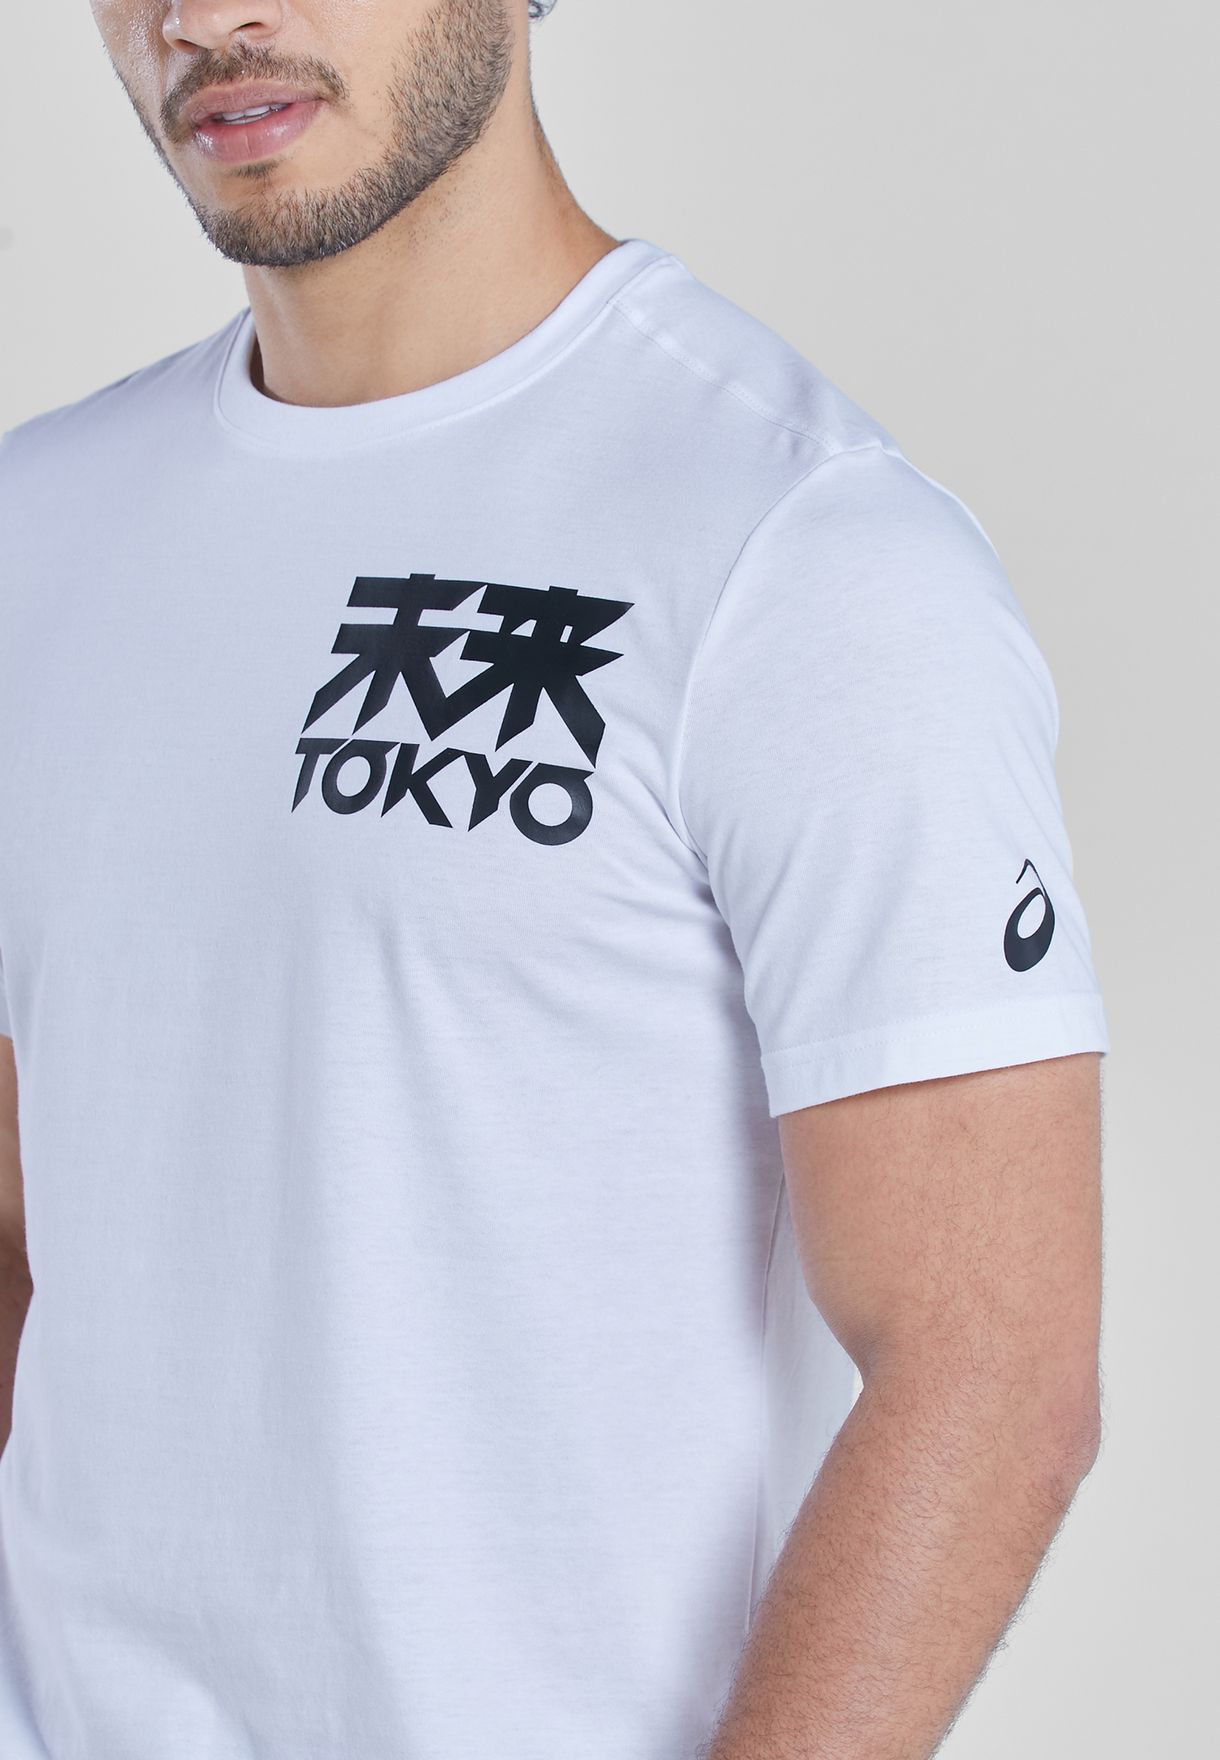 Future Tokyo T-Shirt